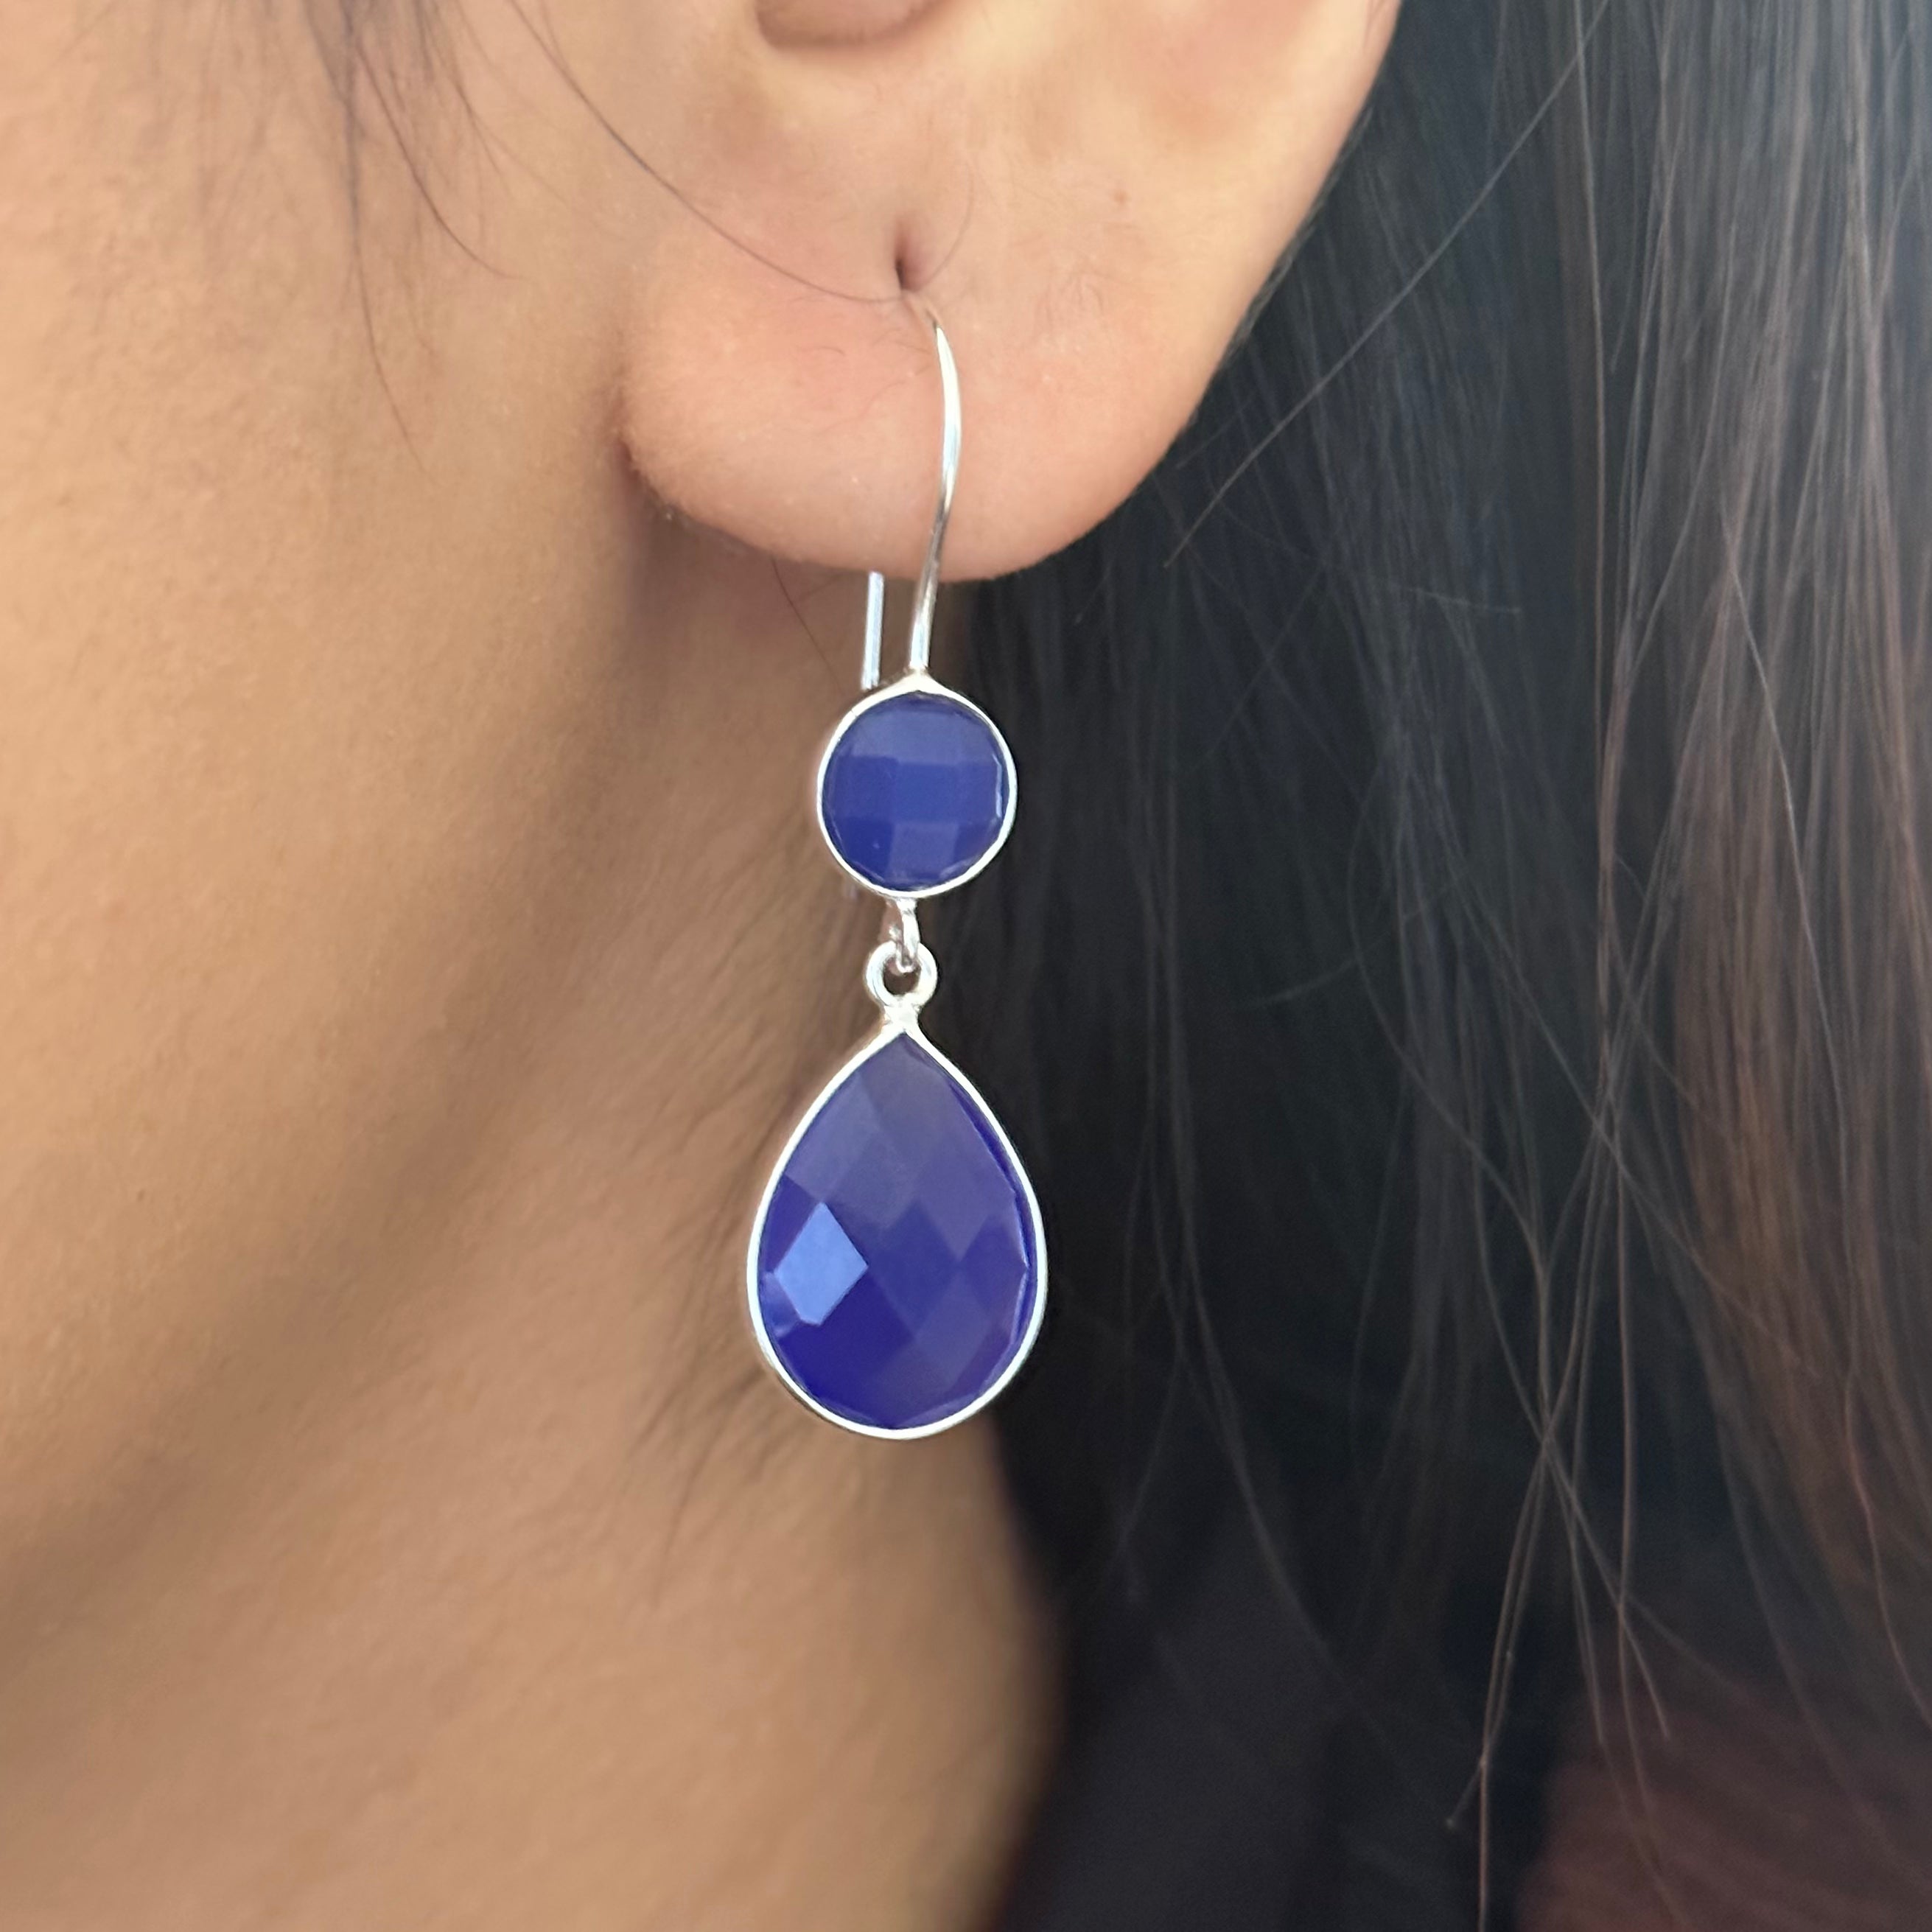 Blue Chalcedony Gemstone Two Stone Earrings in Sterling Silver - Teardrop